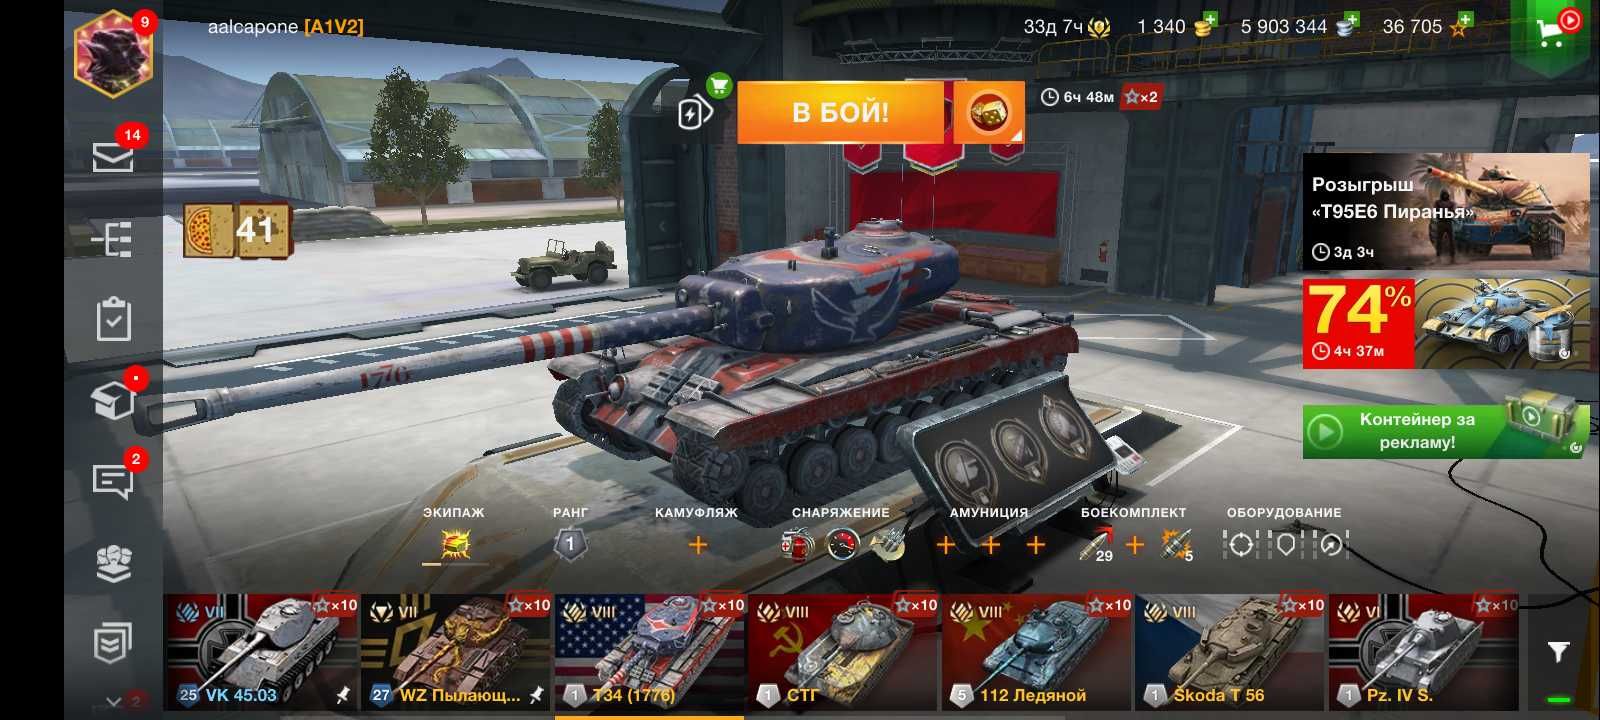 Продам аккаунт в world of tanks